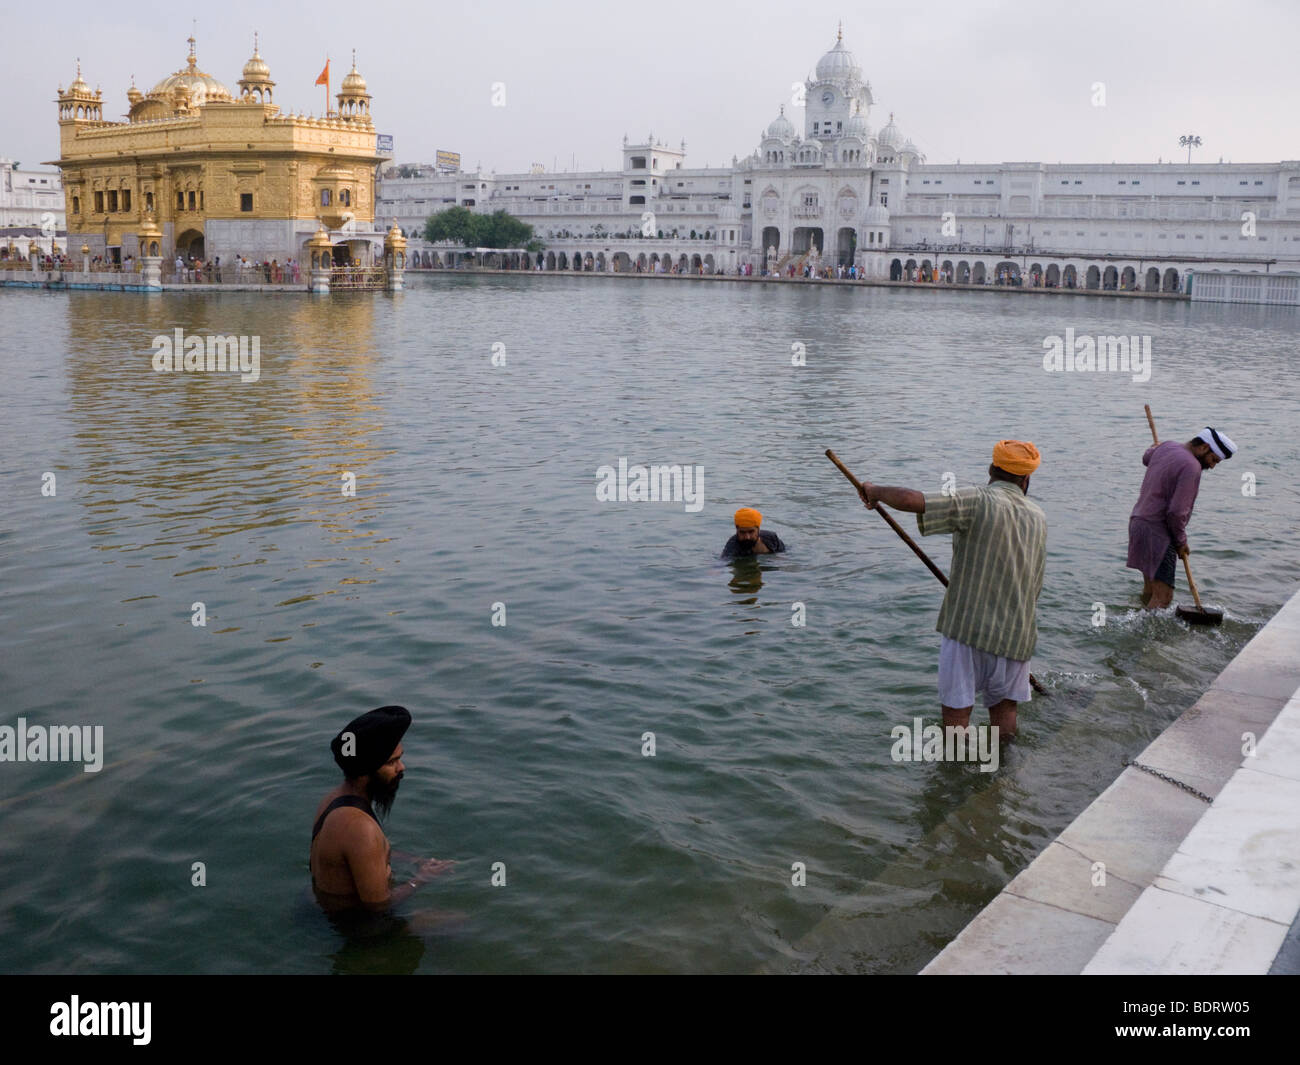 Nettoyer les Sikhs Sarovar (réservoir d'eau) - autour du Temple d'Or (Sri Harmandir Sahib) ; d'autres se baignent. Amritsar. Punjab. L'Inde. Banque D'Images